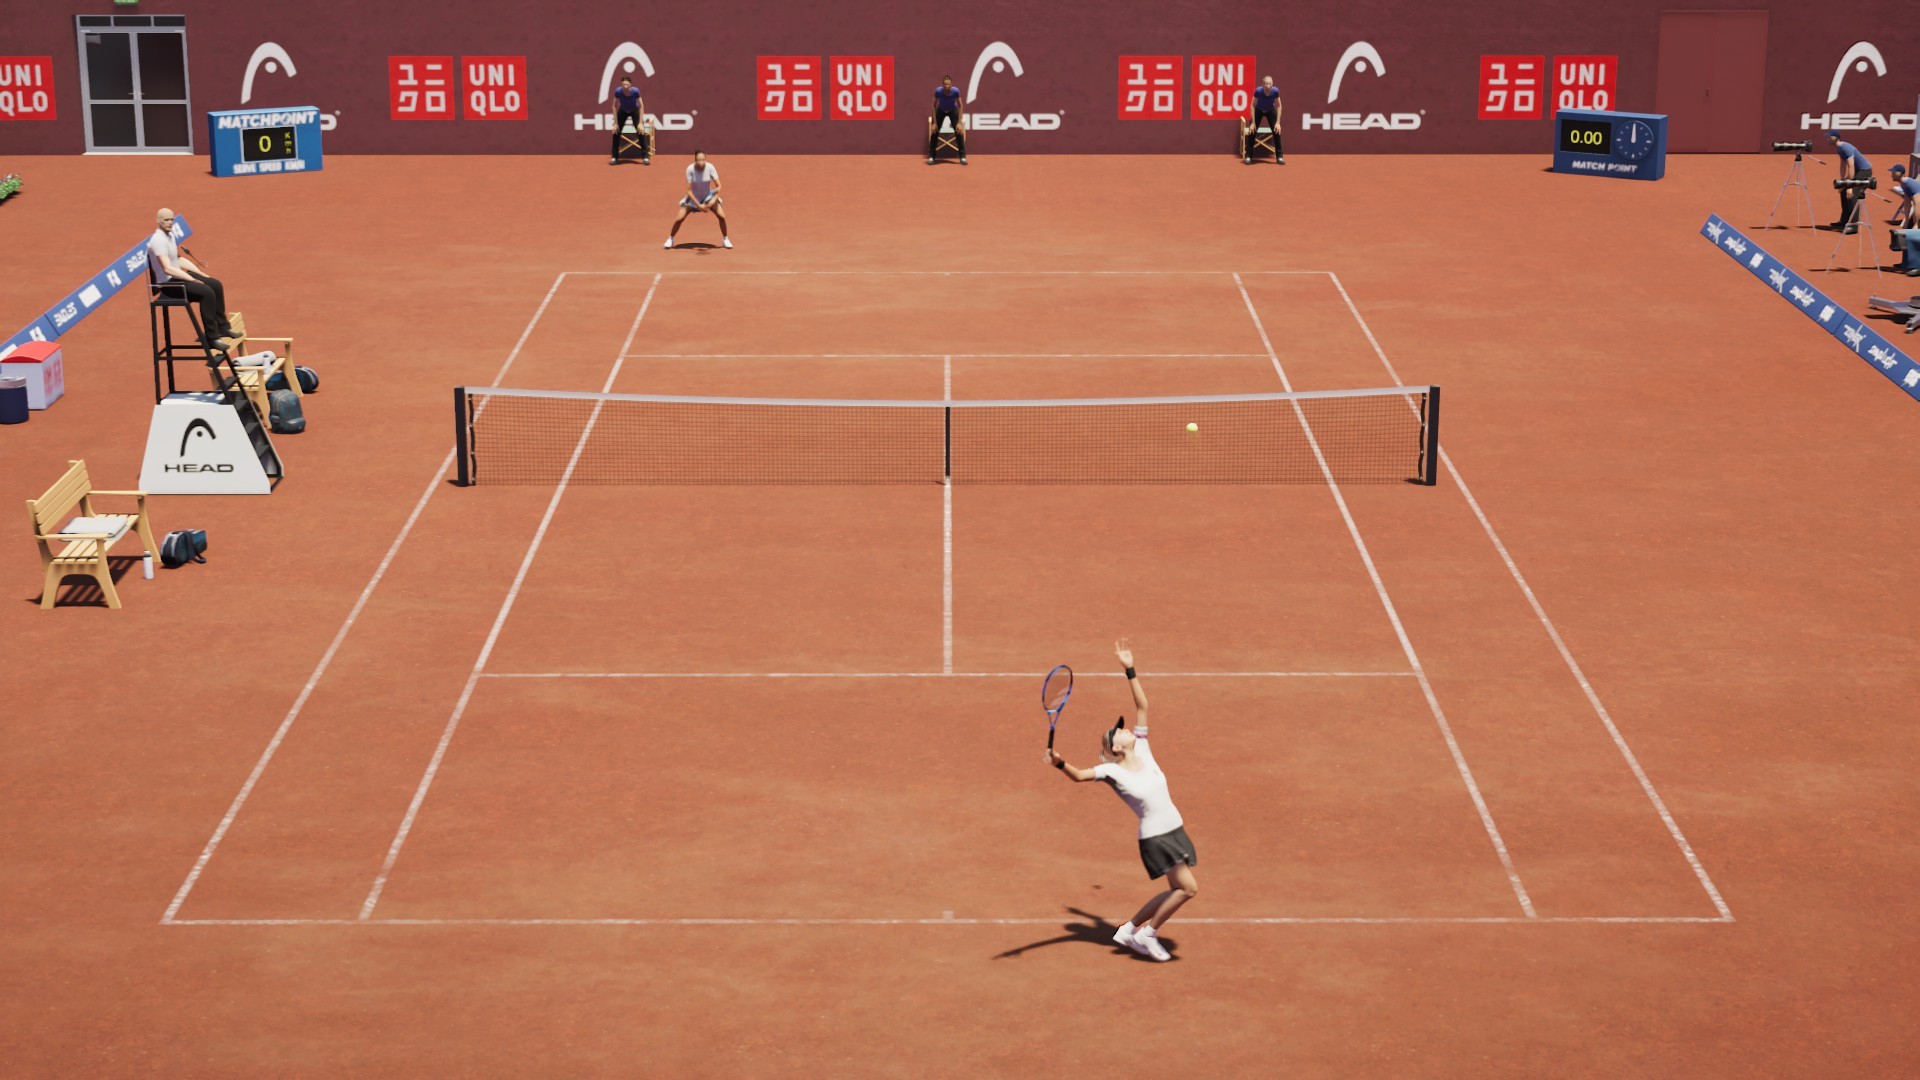 Matchpoint - Tennis Championships screenshot 42938